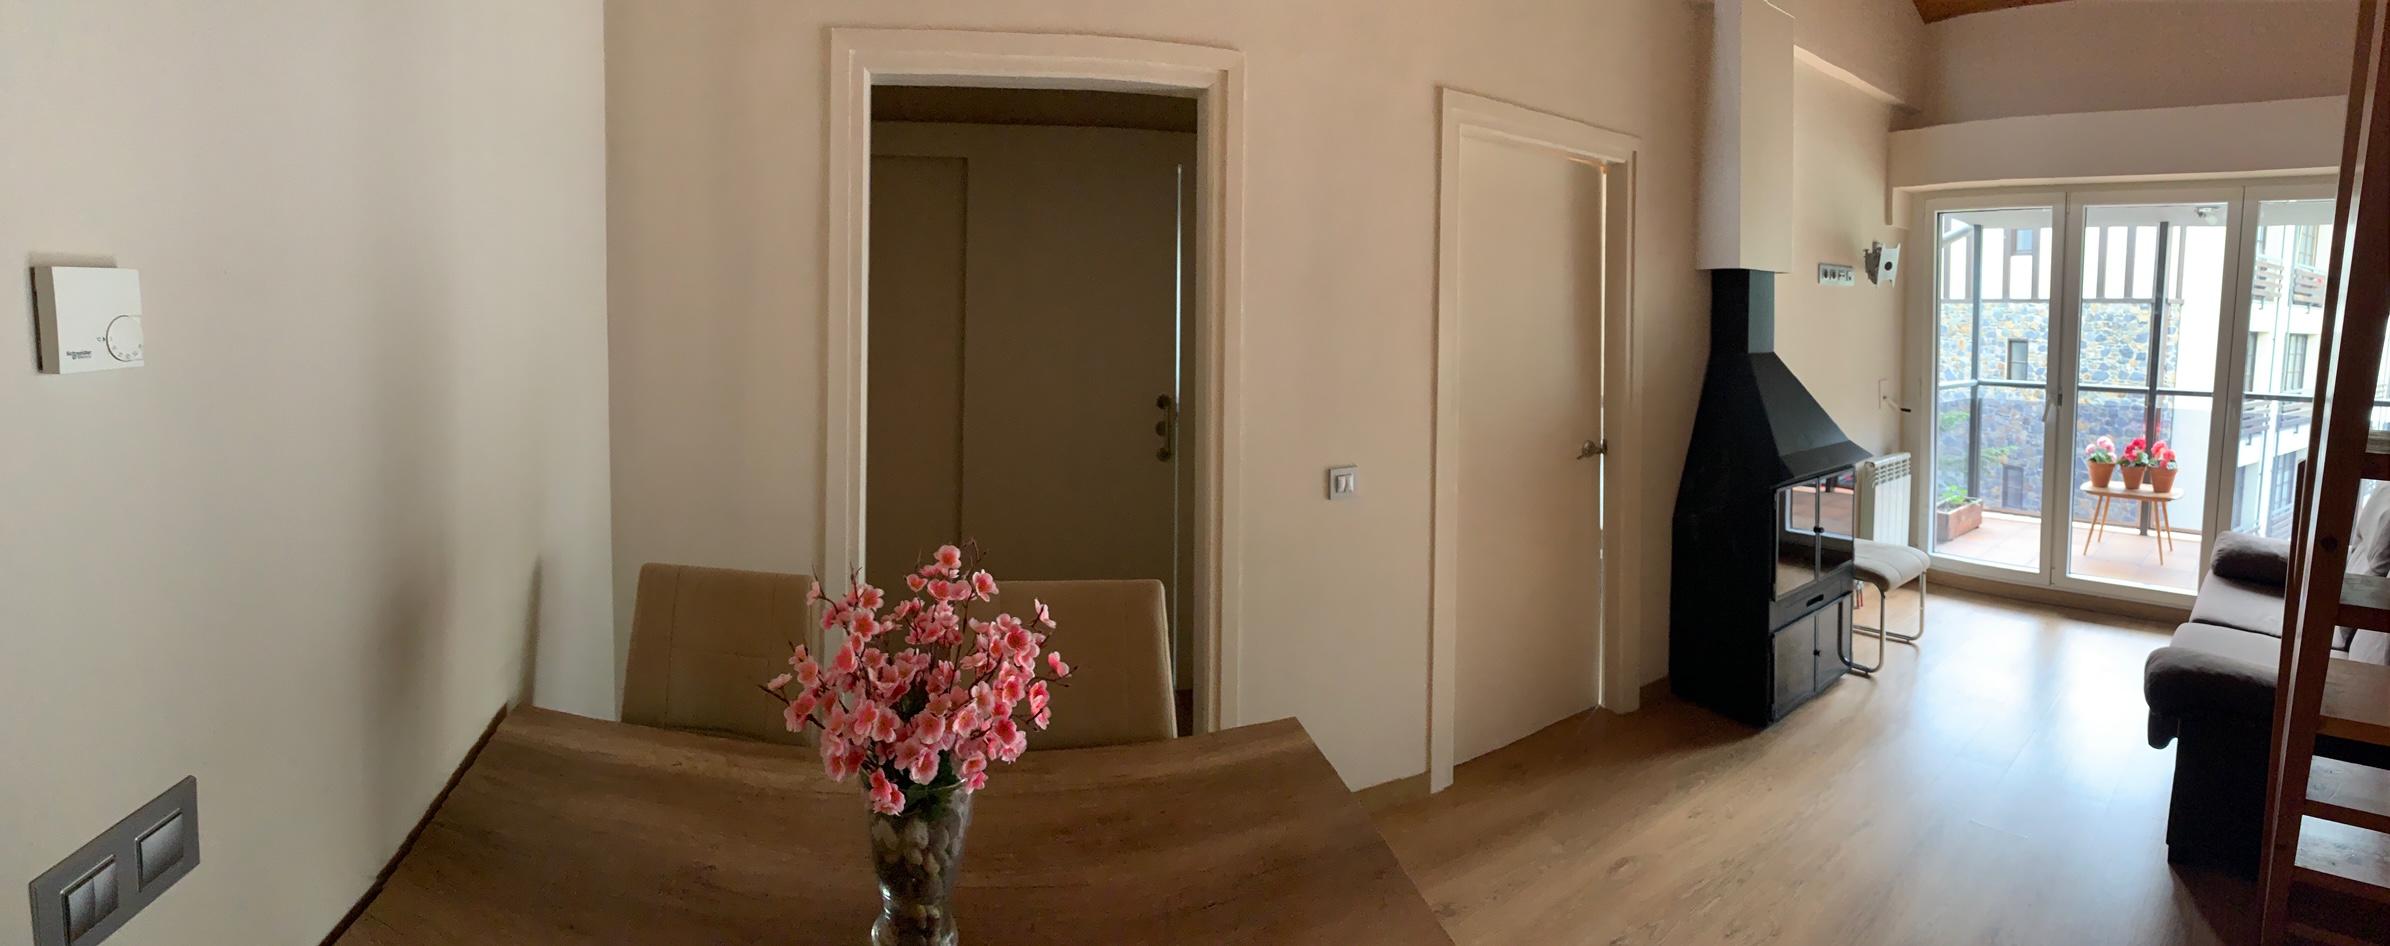 Piso de alquiler en Ordino, 3 habitaciones, 100 metros